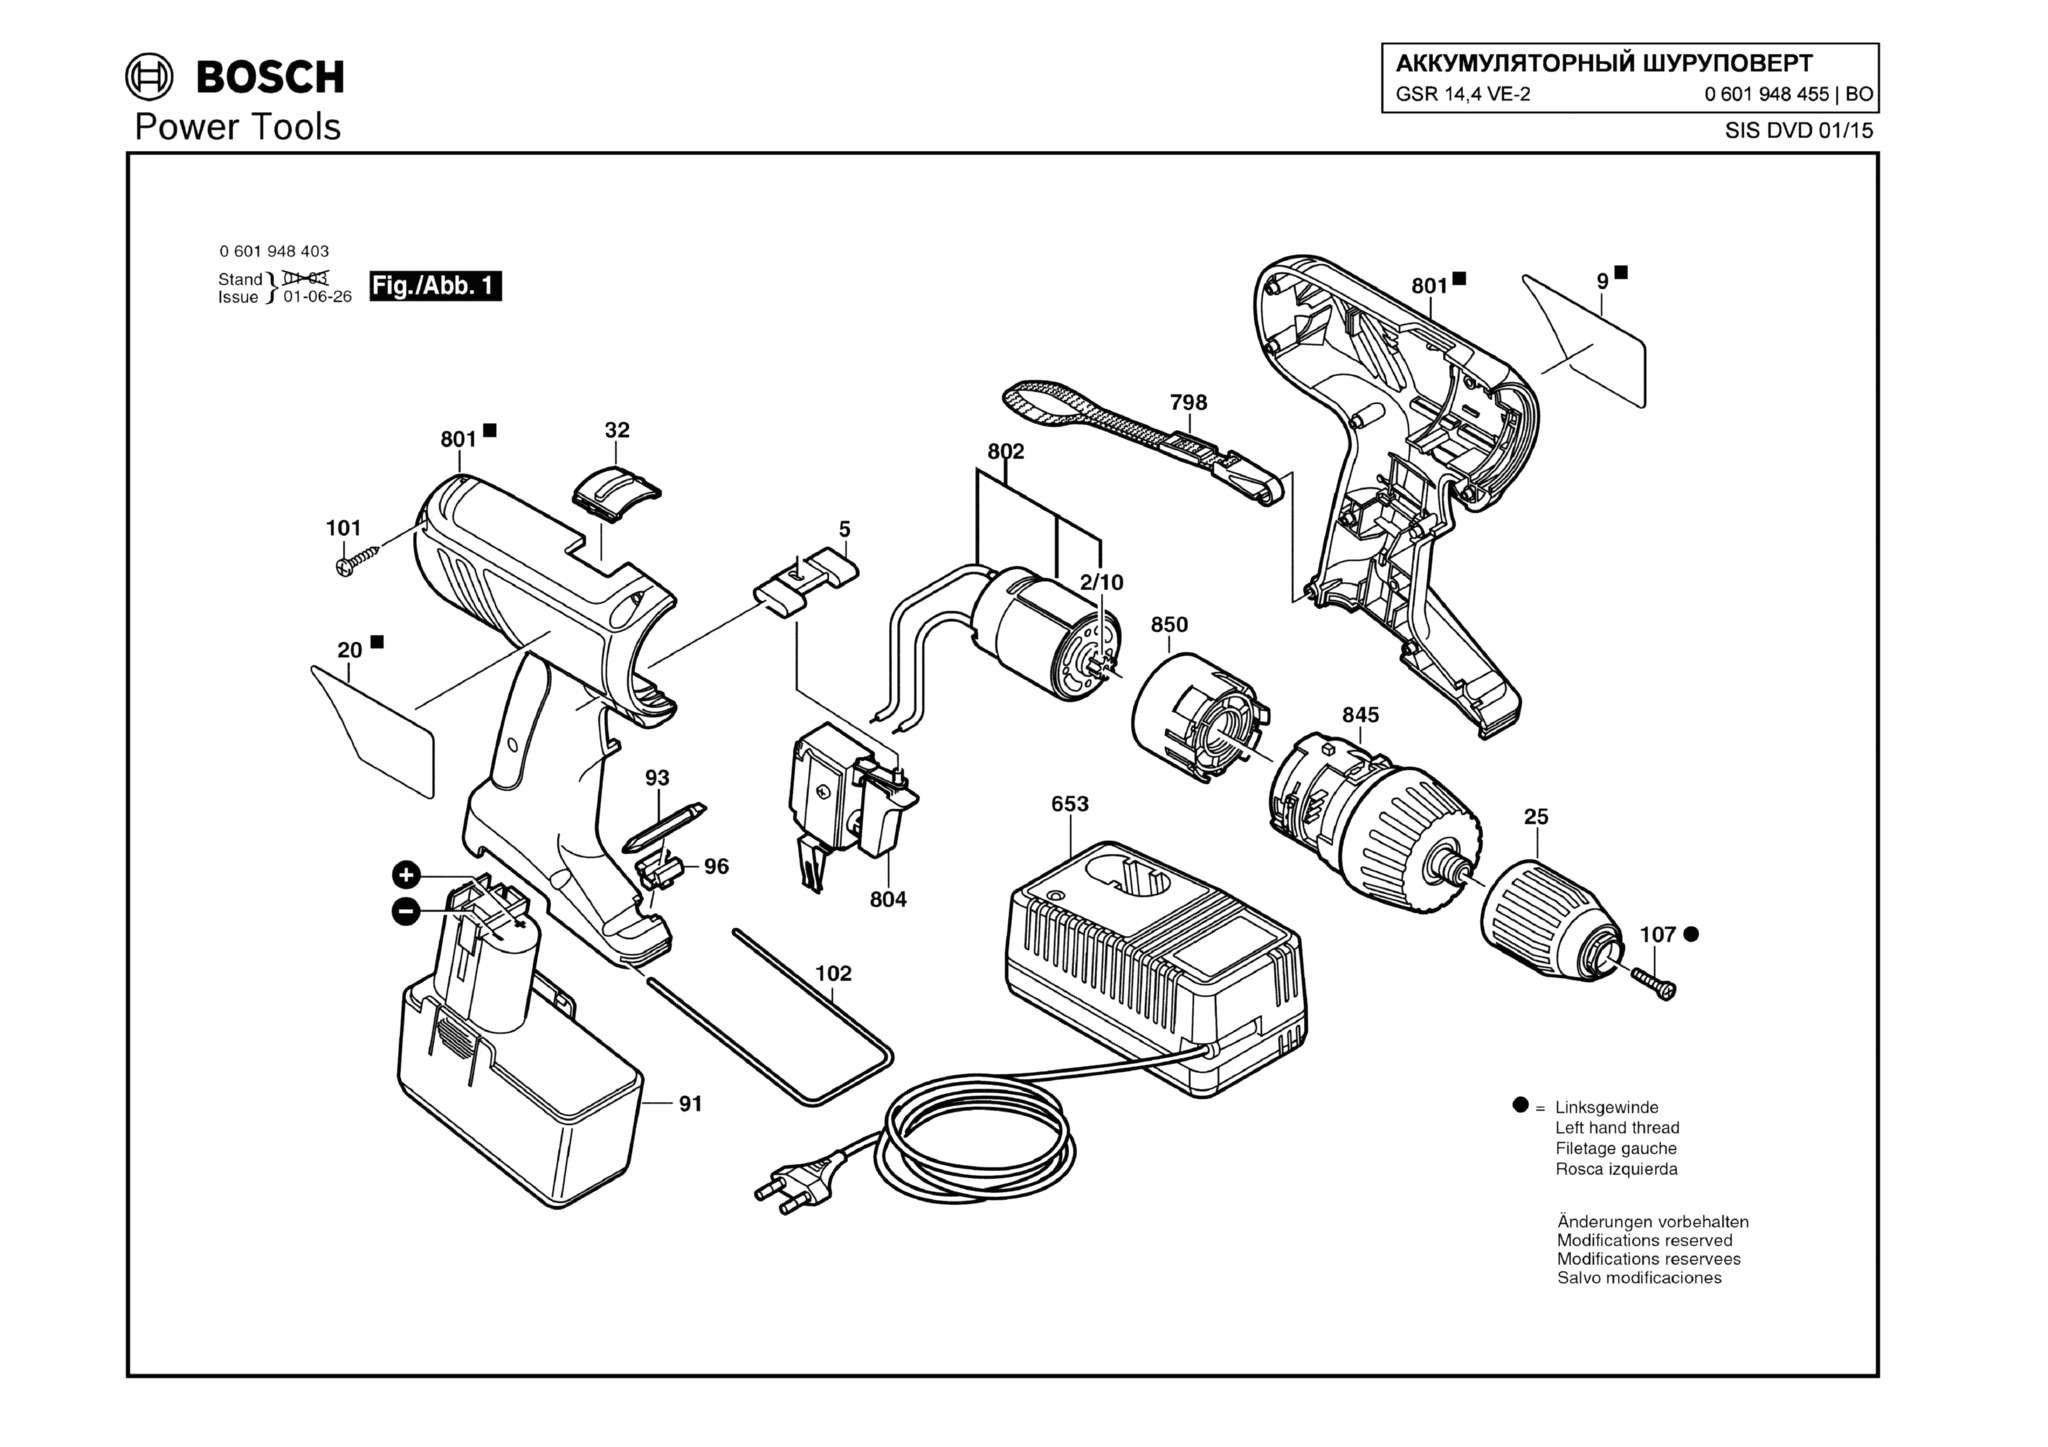 Запчасти, схема и деталировка Bosch GSR 14,4 VE-2 (ТИП 0601948455)